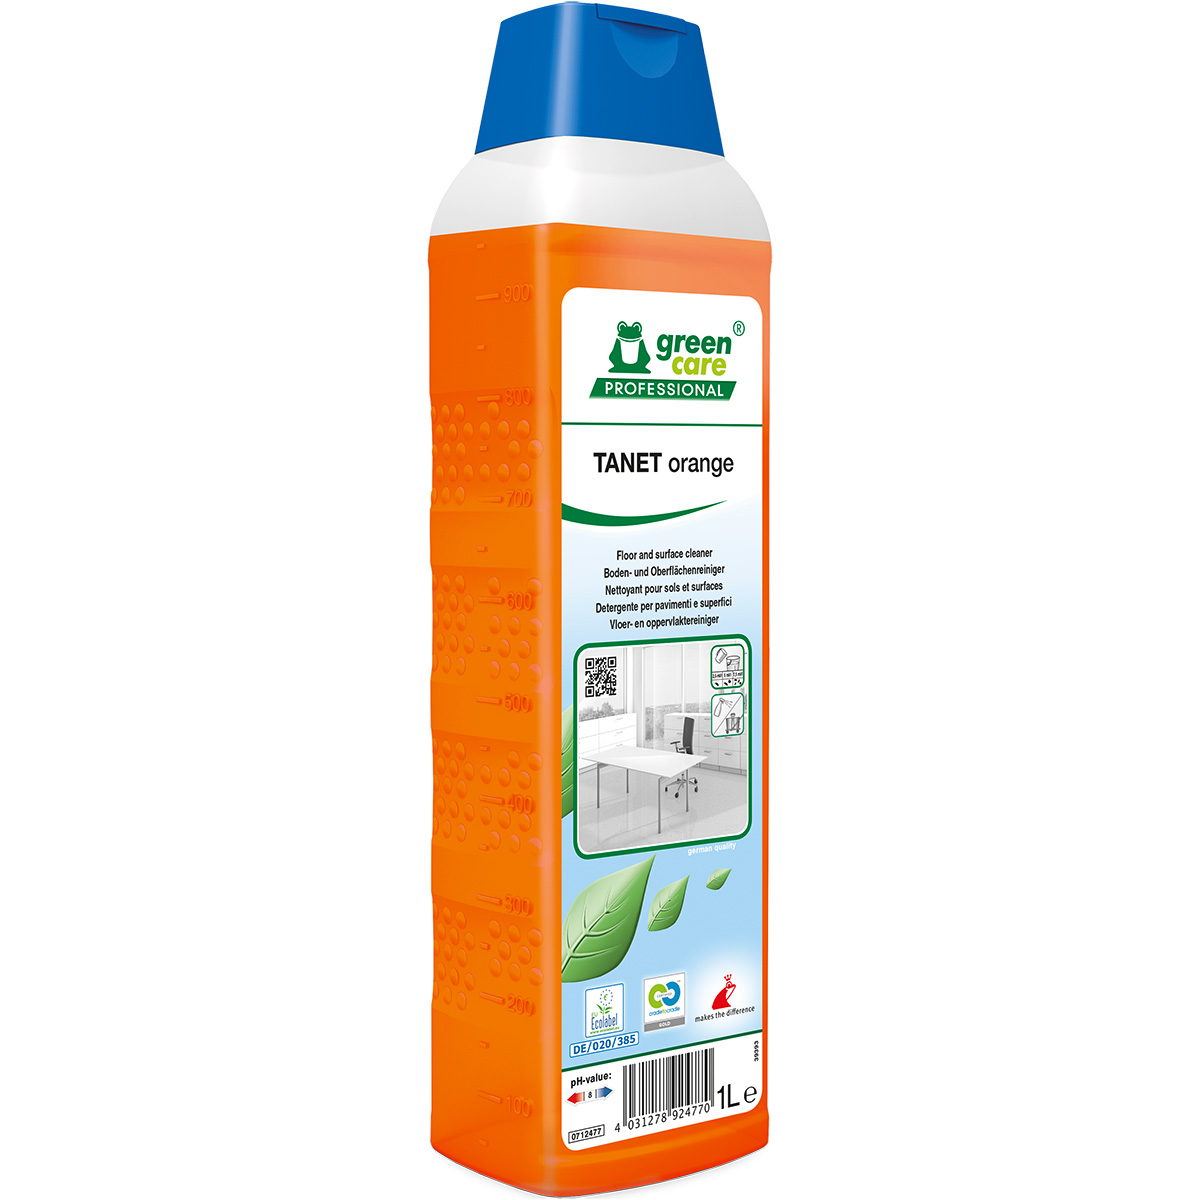 Green Care TANET orange nettoyant pour sols et surfaces